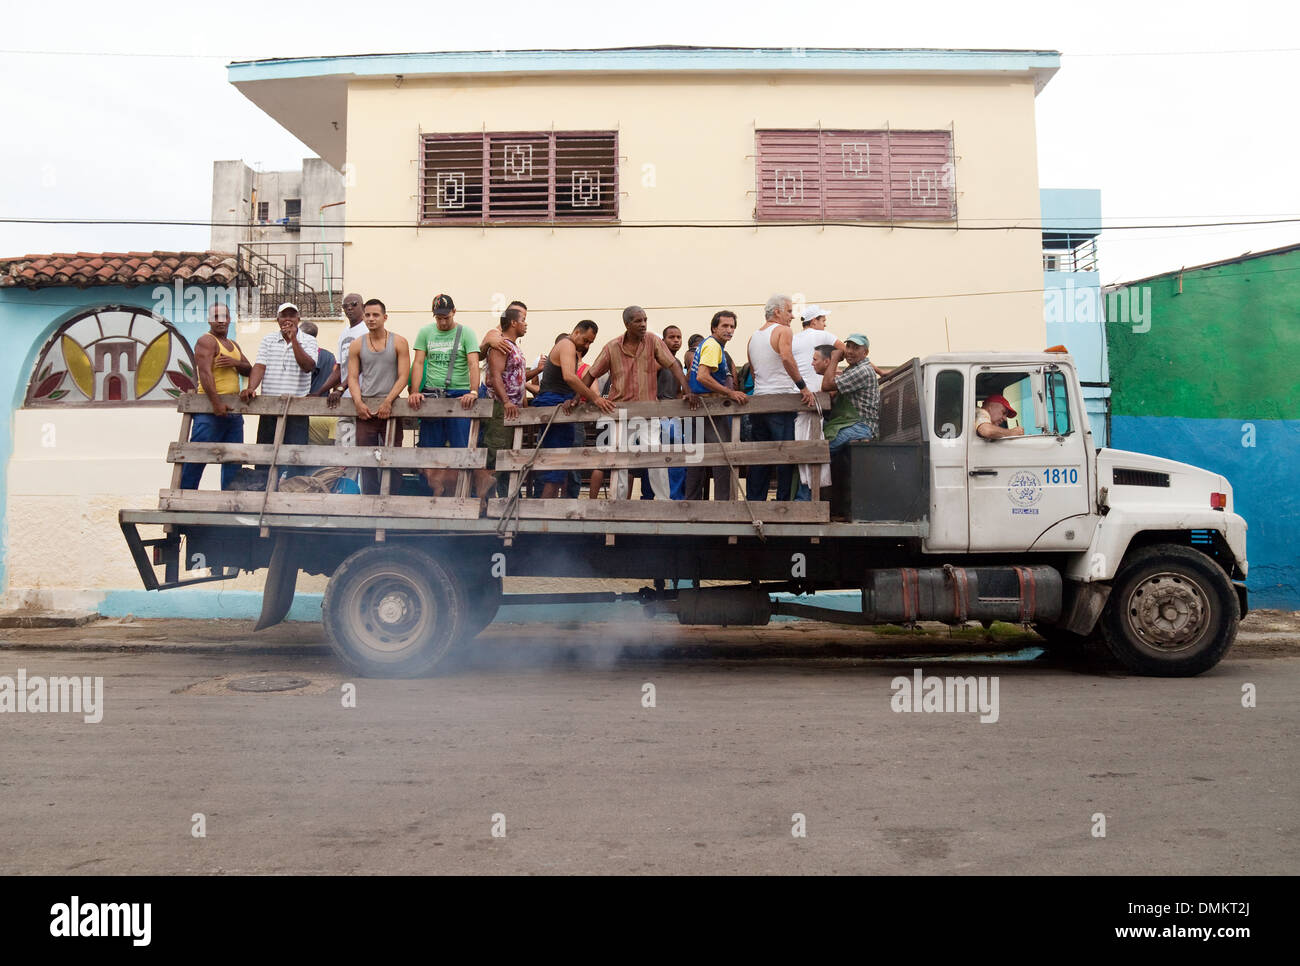 Un camión teniendo un gran número de hombres a trabajar, La Habana, Cuba, el Caribe, América Latina Foto de stock